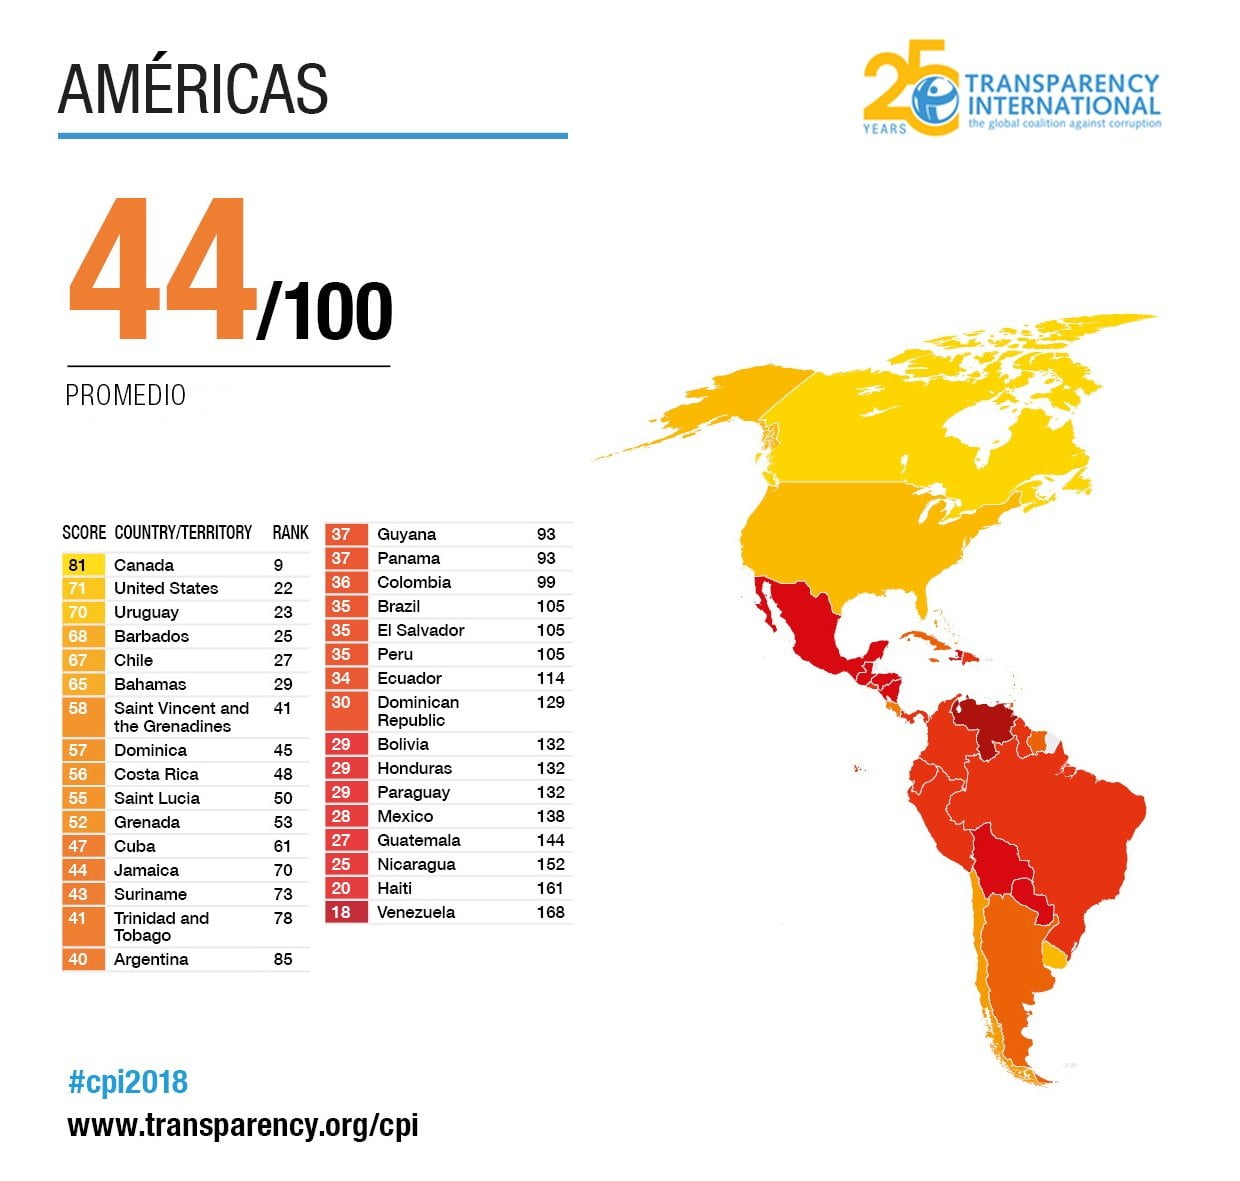 Perú cae a puesto 105 en lucha anticorrupción por Lava Jato y Cuellos Blancos